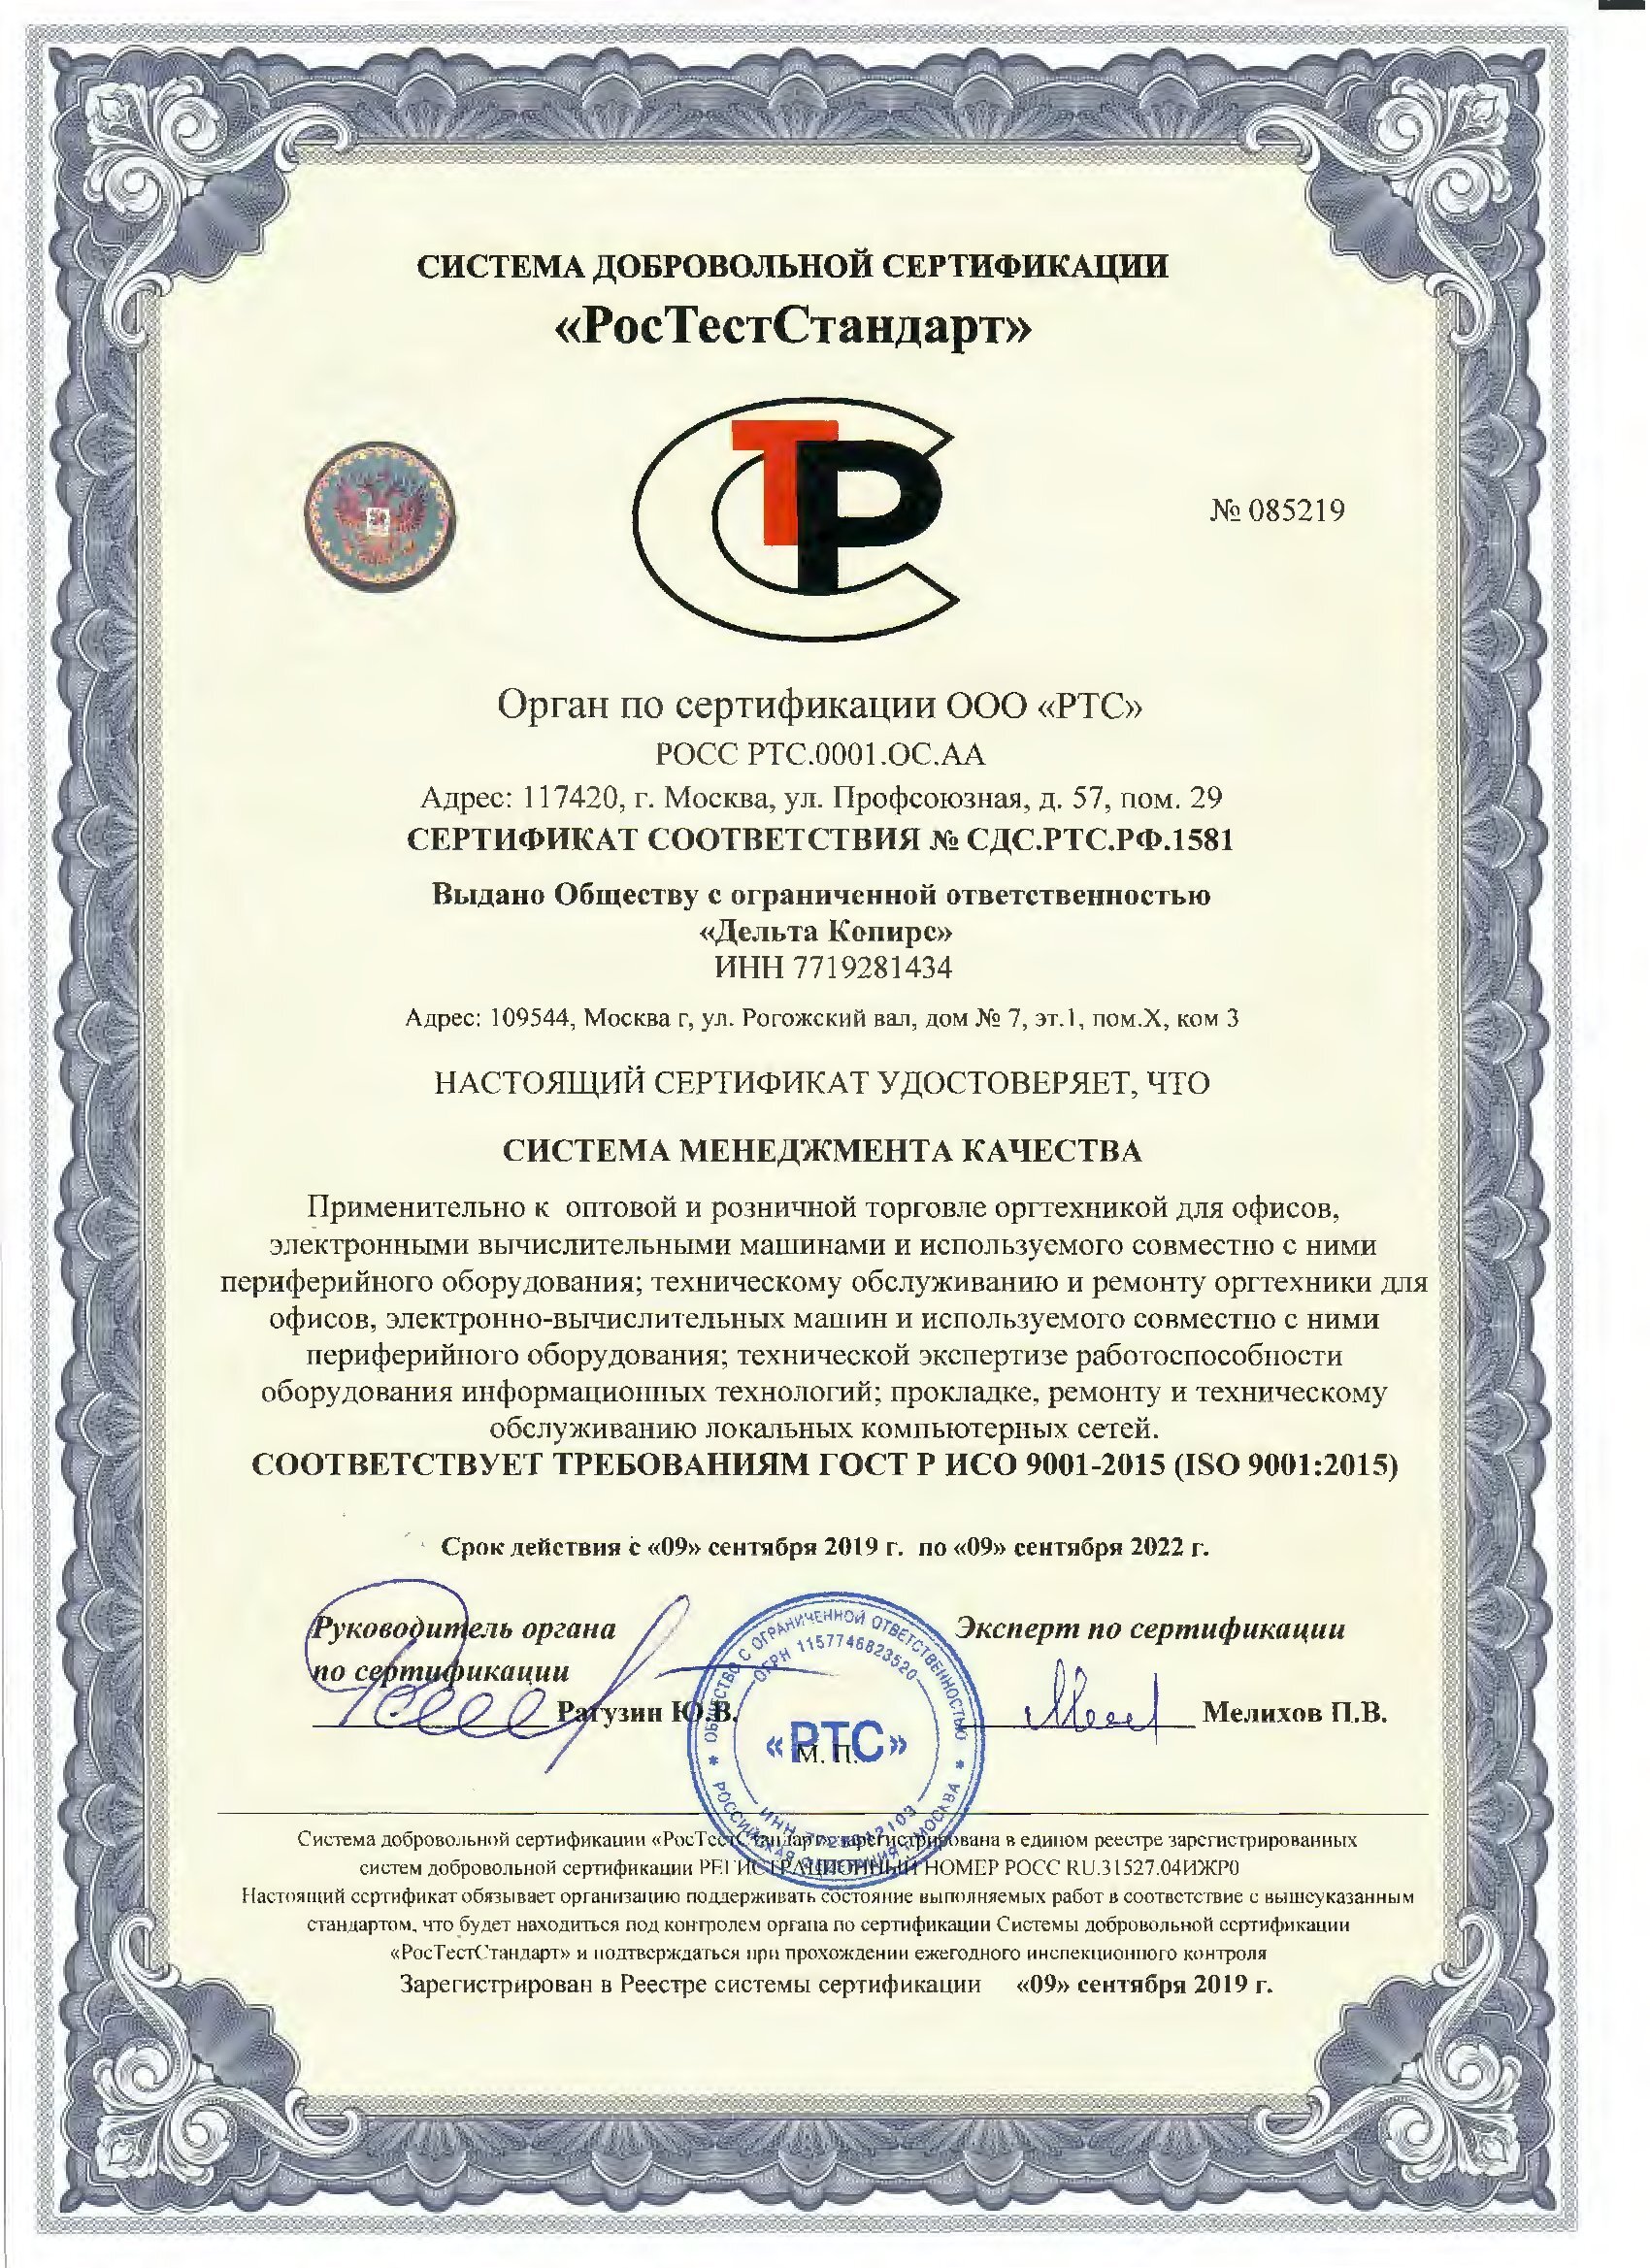 сертификаты дельта копирс